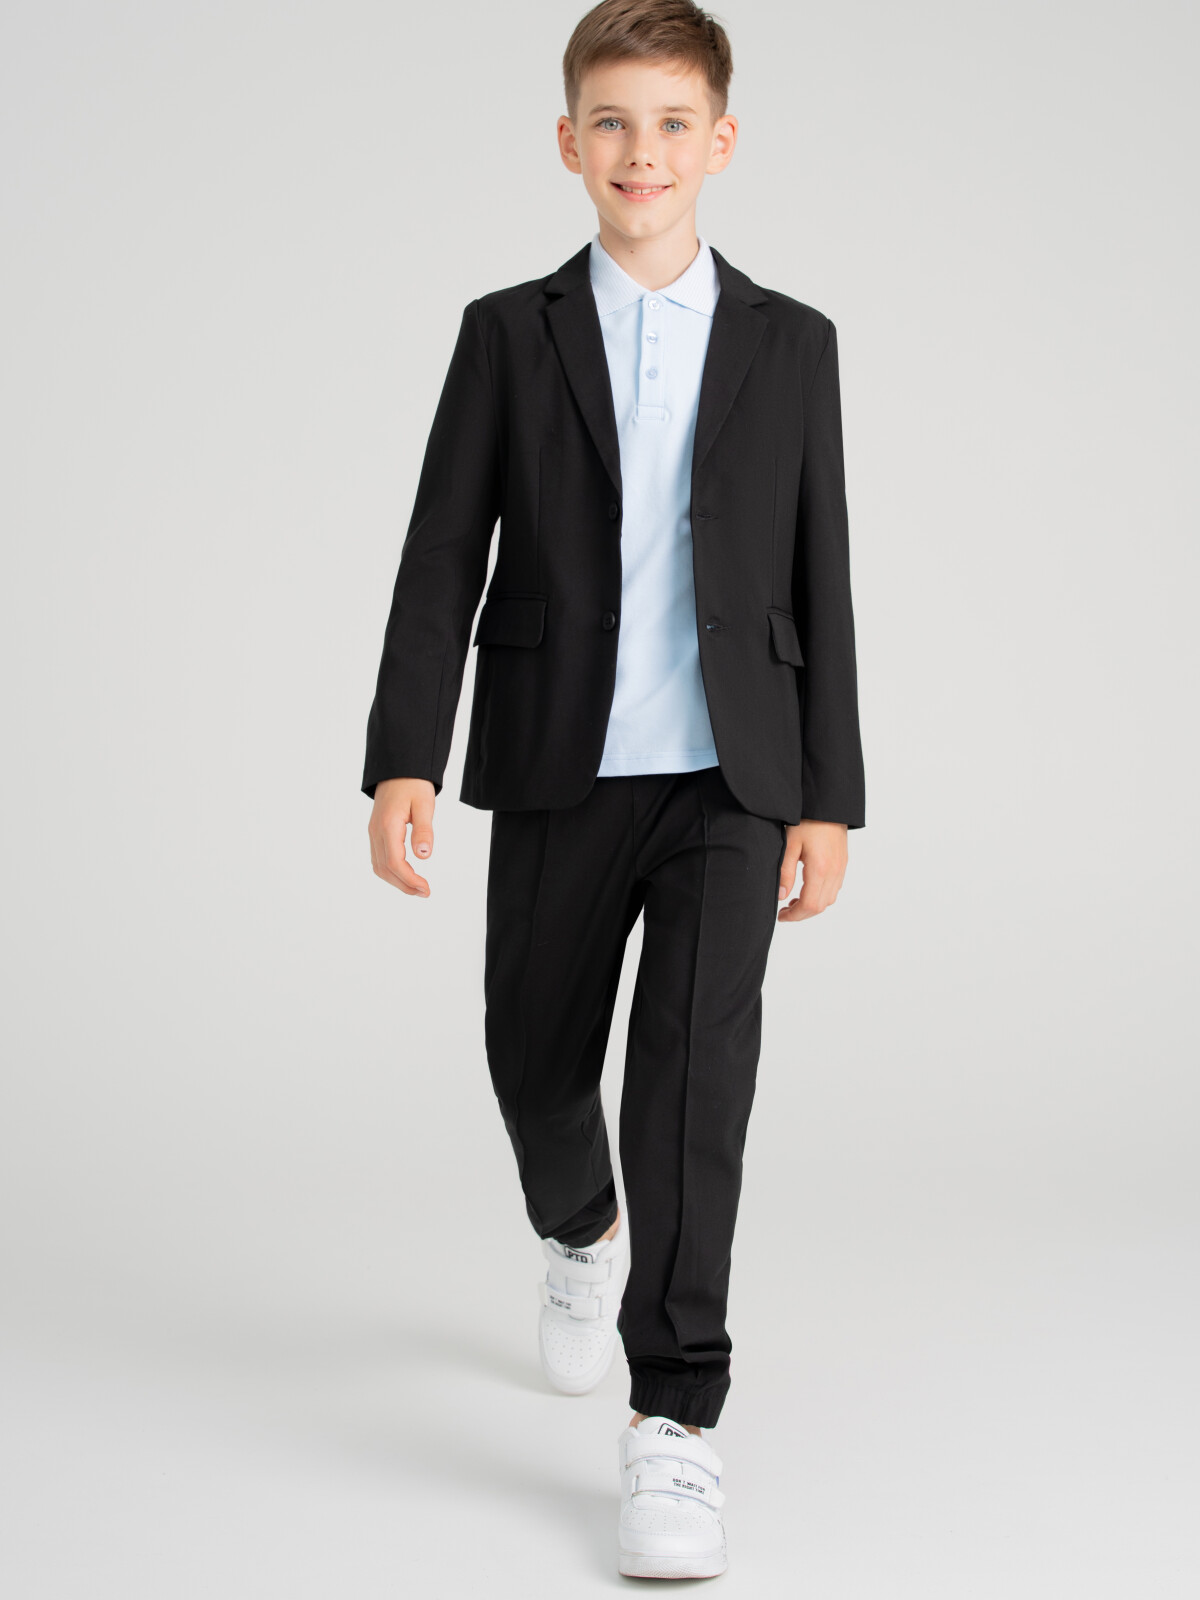 Костюм текстильный для мальчиков PlayToday: брюки, пиджак, черный, 158